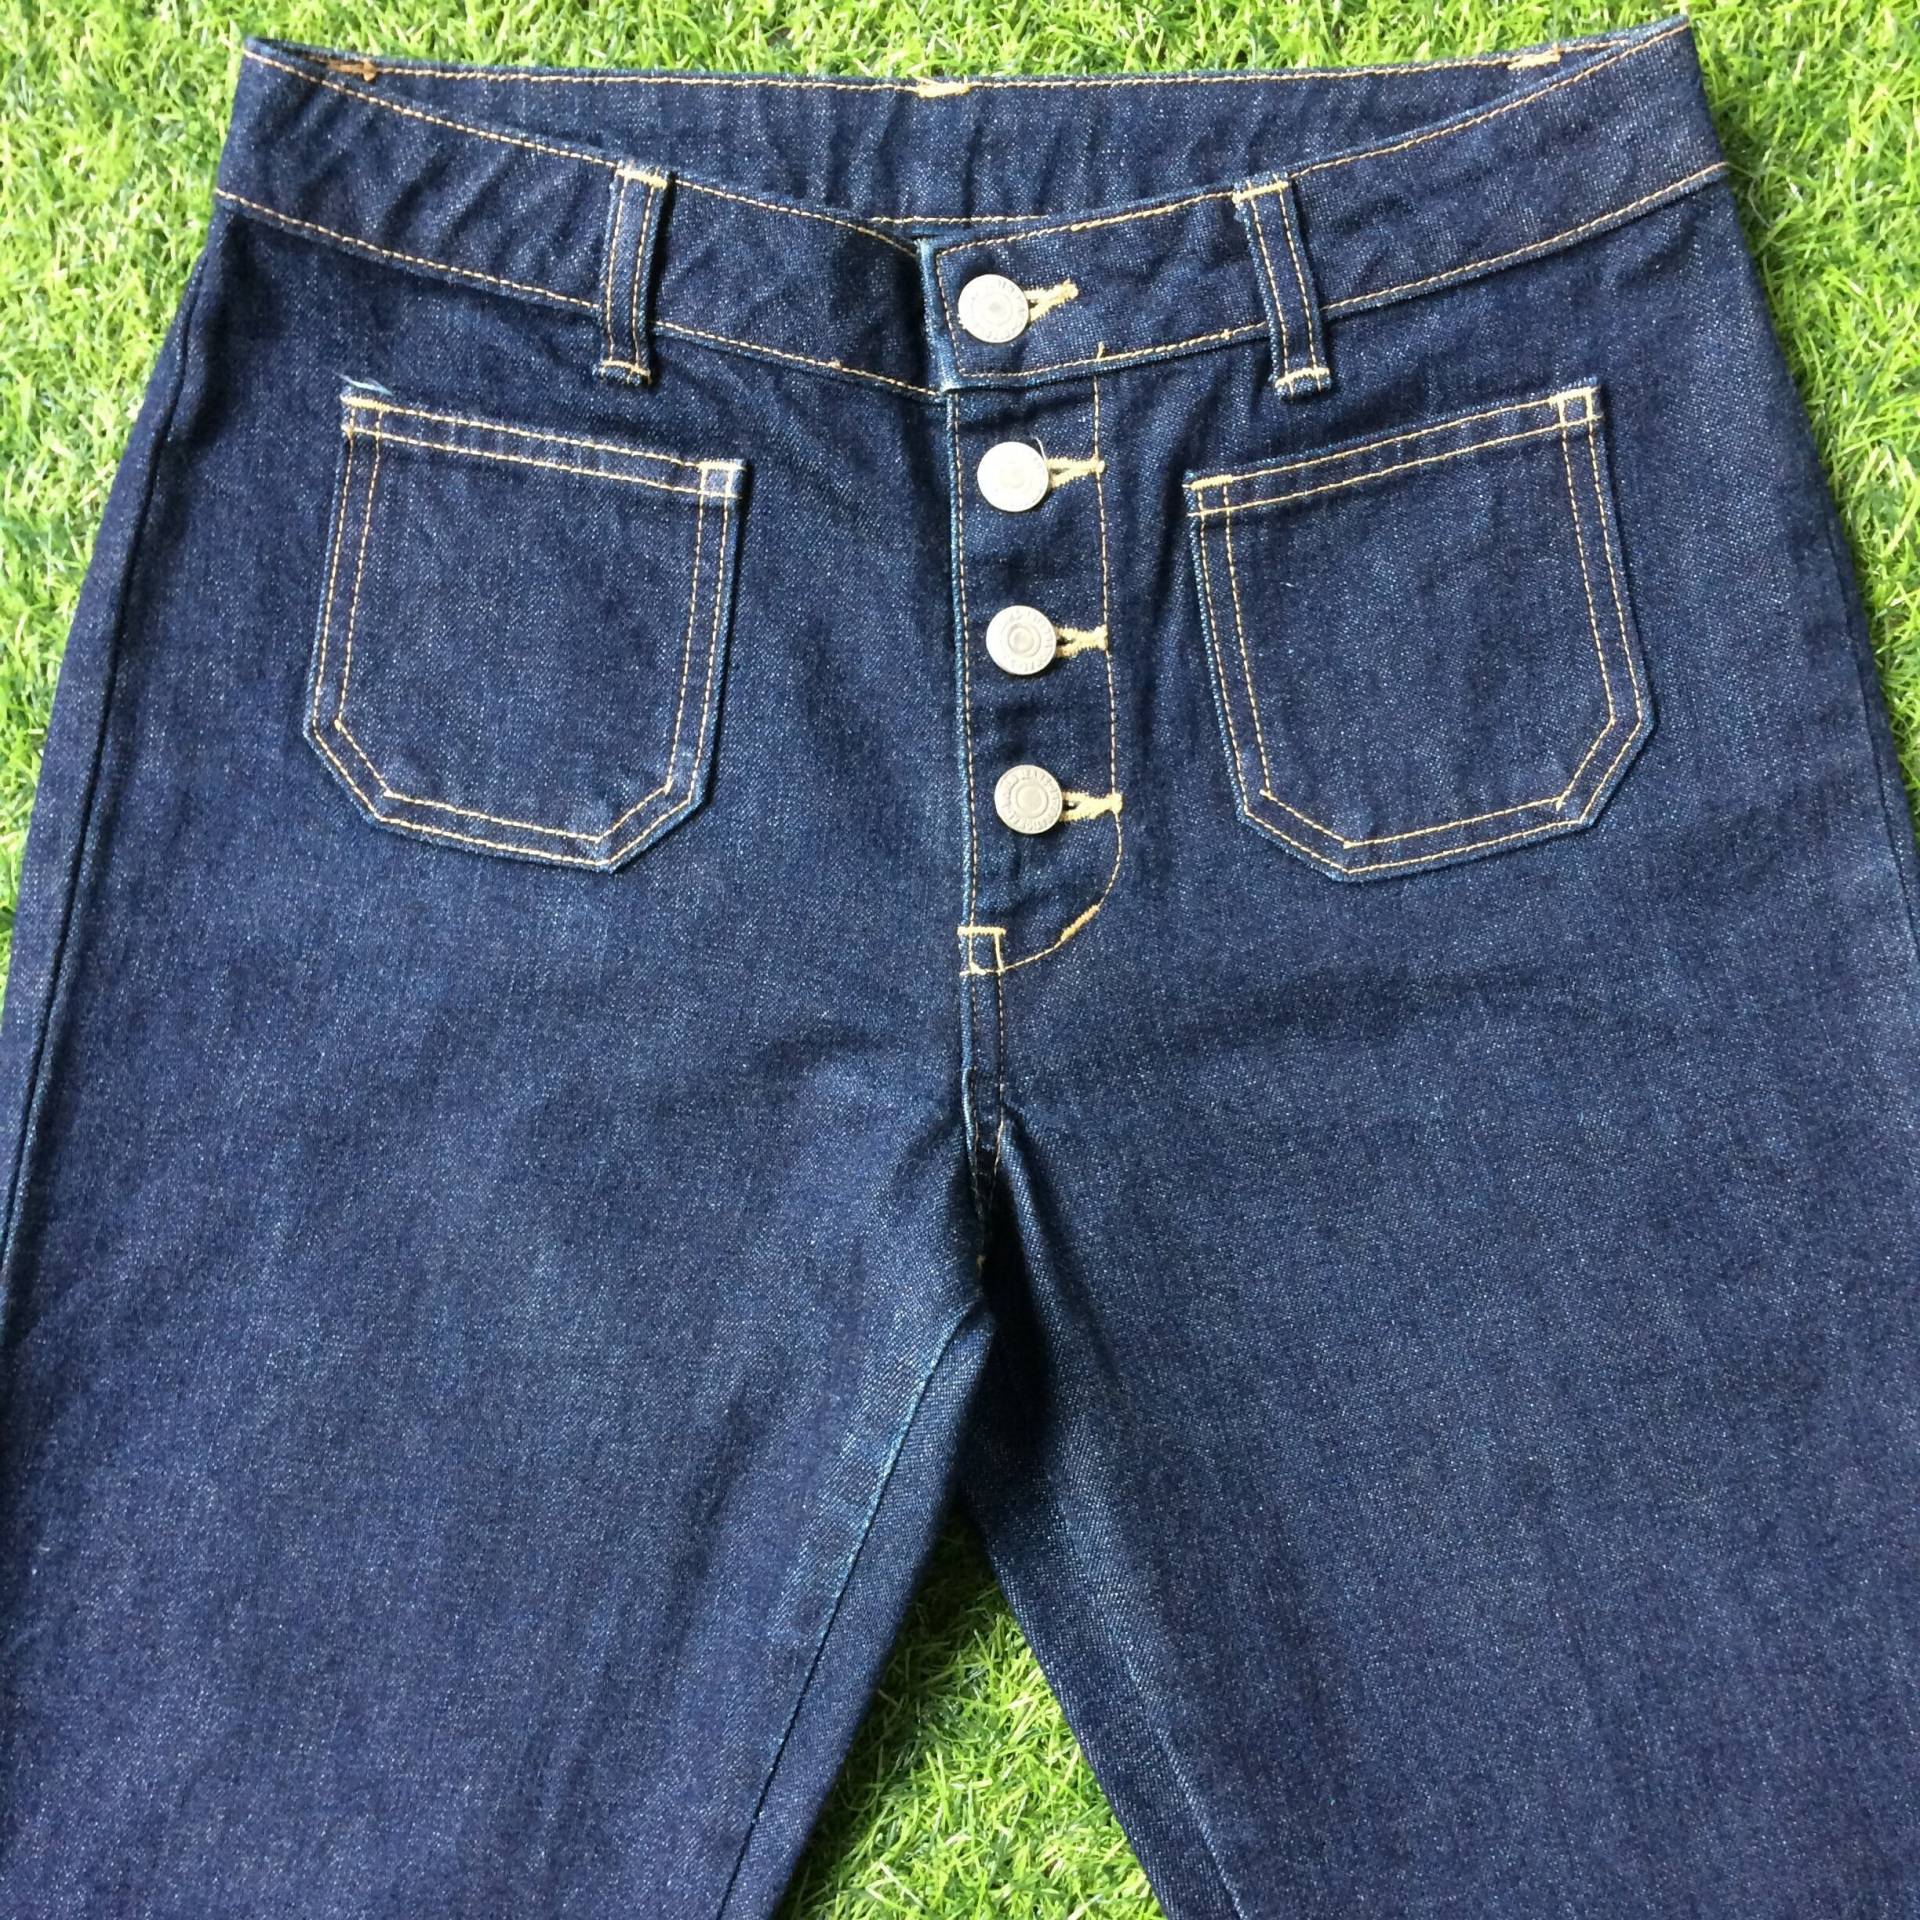 Größe 26 Vintage Sailor Jeans Breites Bein W26 L30 Belichtet Knopf Fly Jean Dark Wash Denim Made in Japan Taille 26" von BackyardFashion